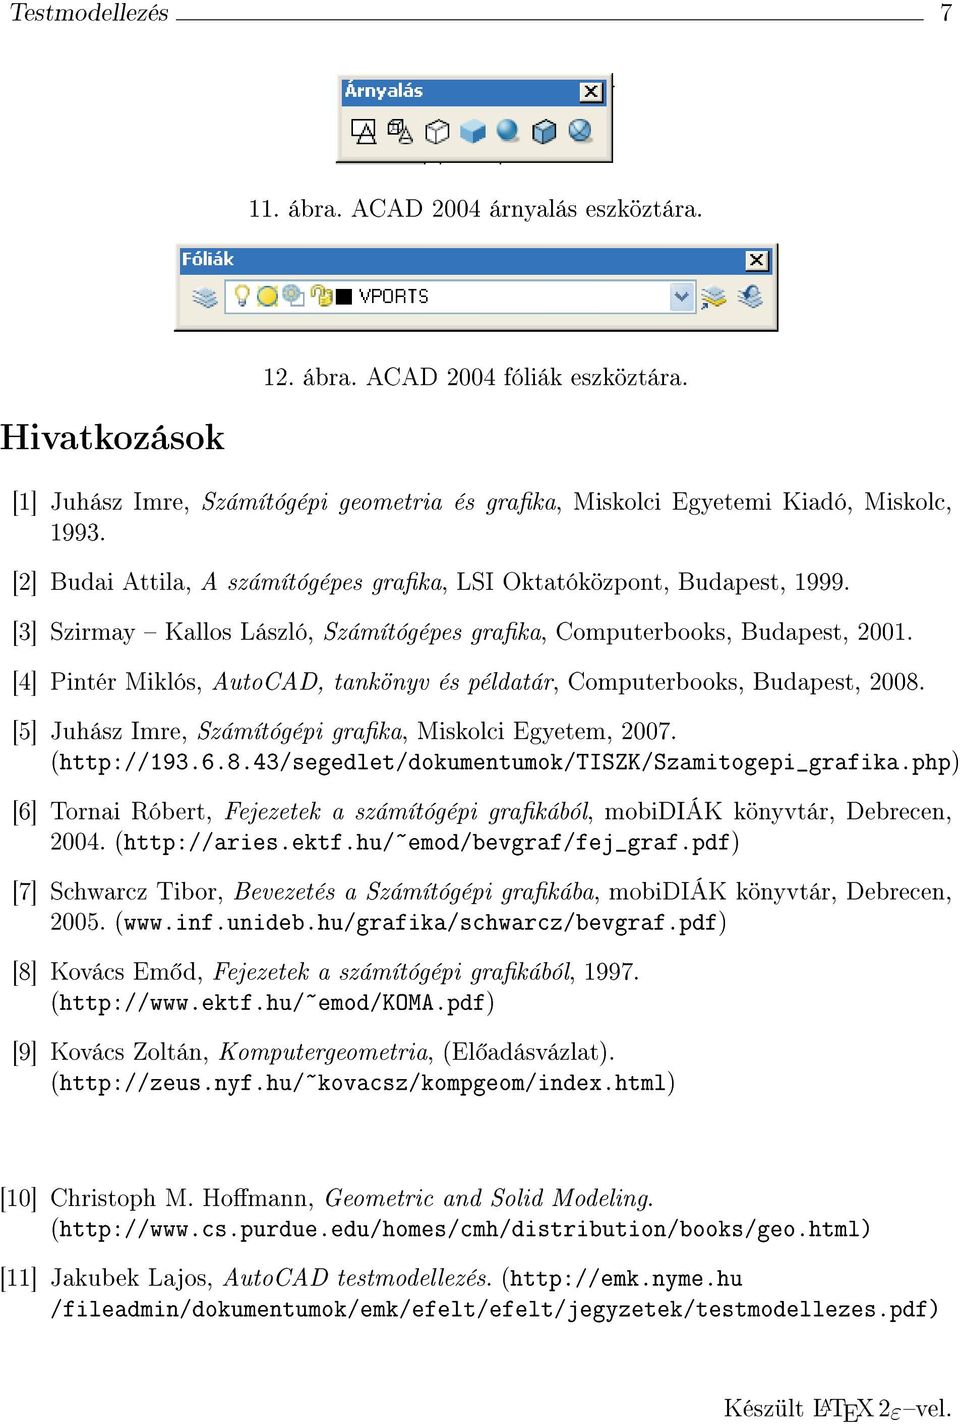 [4] Pintér Miklós, utocd, tankönyv és példatár, Computrbooks, Budapst, 2008. [5] Juhász Imr, Számítógépi graka, Miskolci Egytm, 2007. (http://193.6.8.43/sgdlt/dokumntumok/tiszk/szamitogpi_grafika.